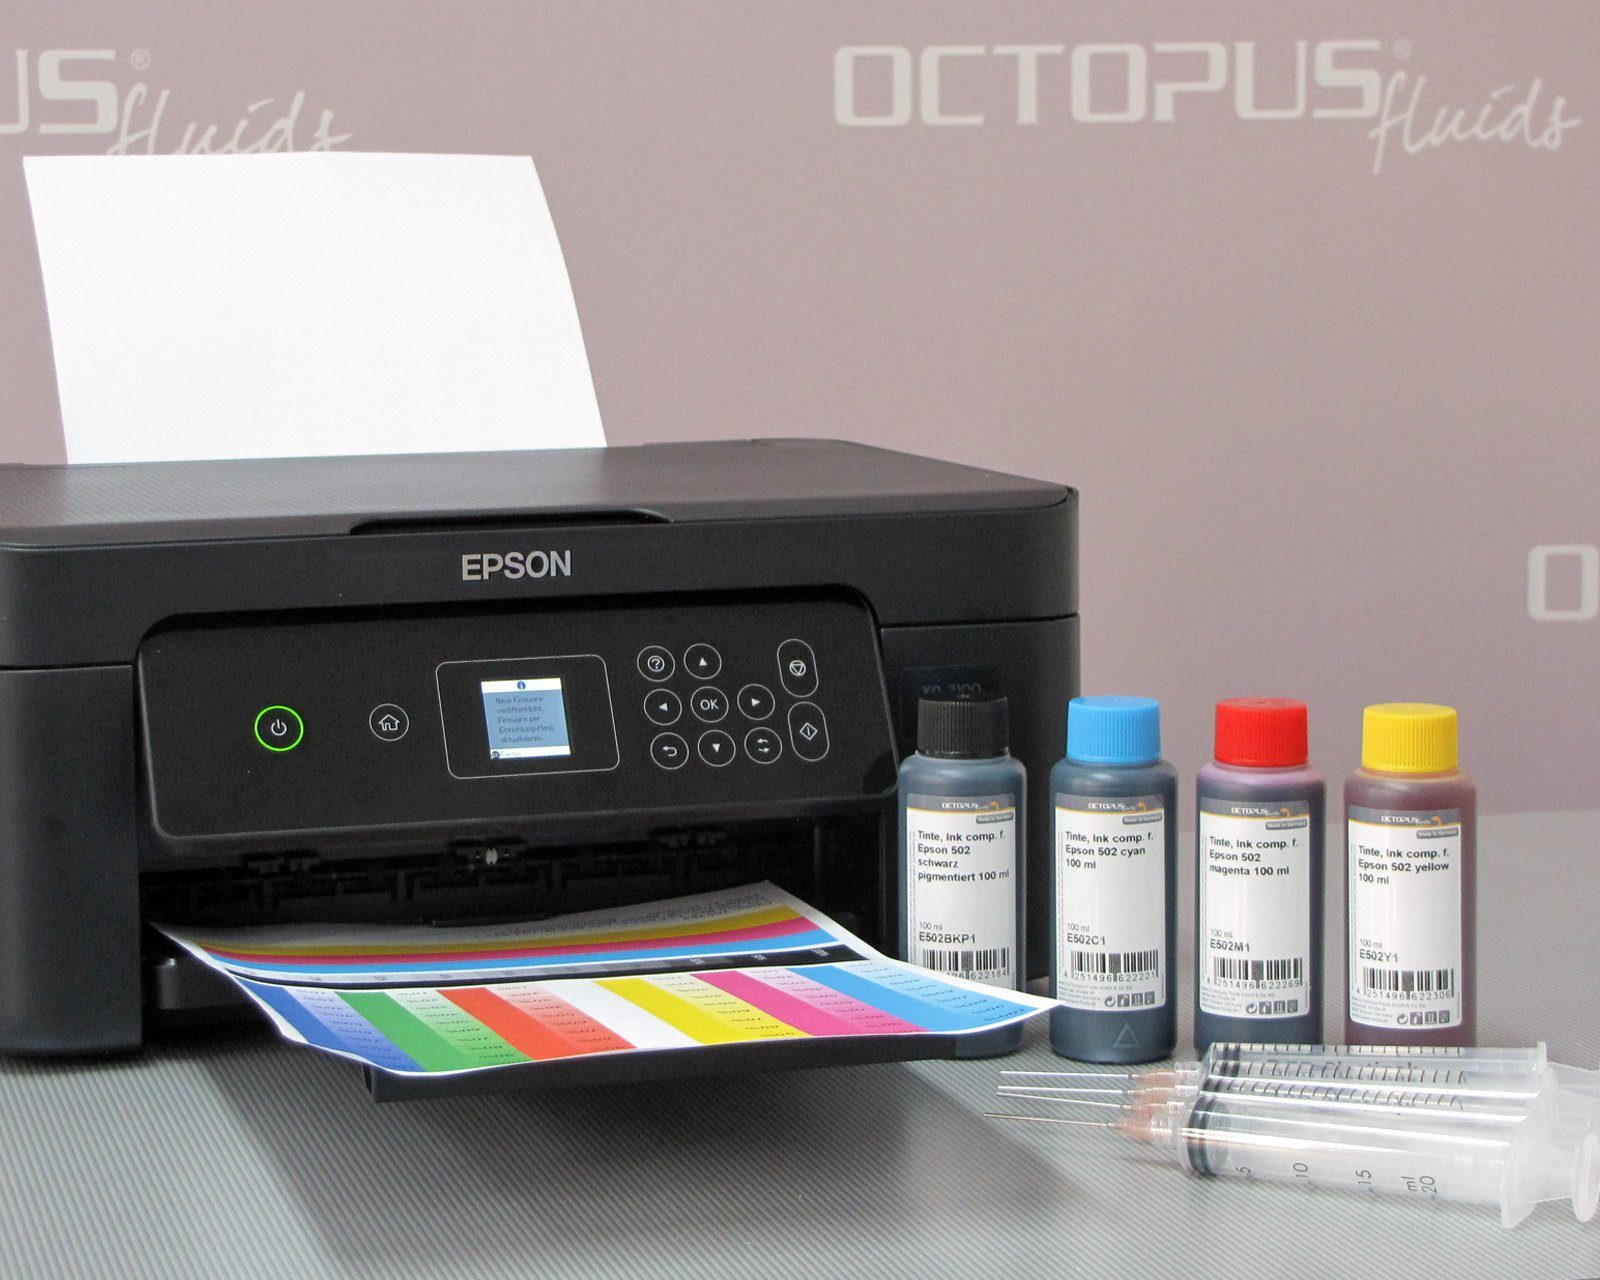 OCTOPUS 603, f. Home x) Druckertinte, Nachfülltinte 3100, Fluids Ink comp. (für Epson Expression XP-2100, Epson,